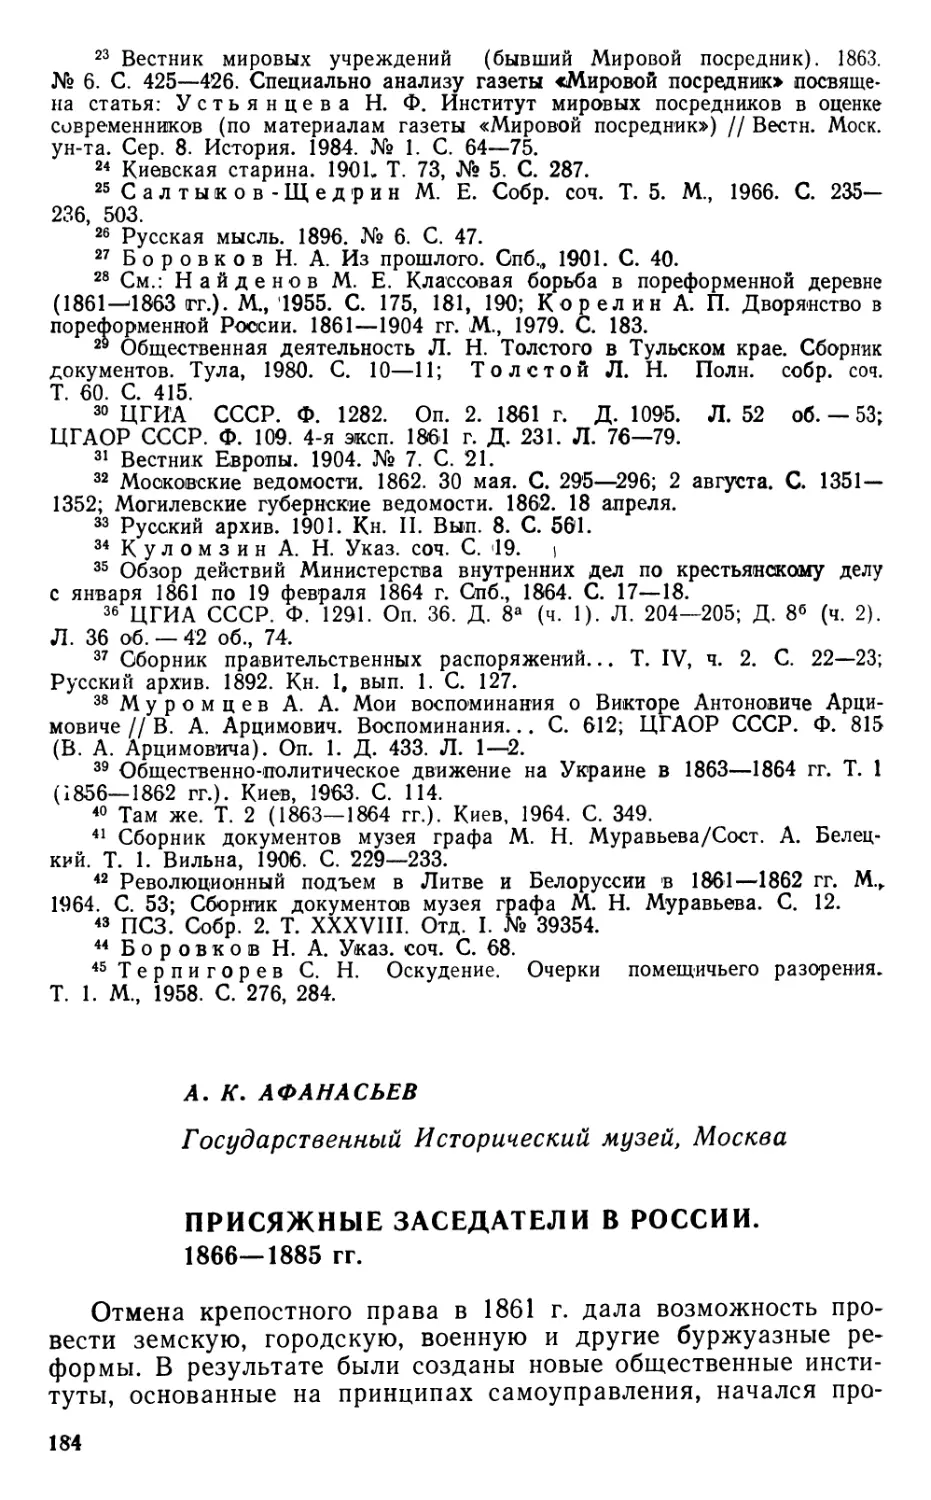 А. К. Афанасьев. Присяжные заседатели в России. 1866—1885